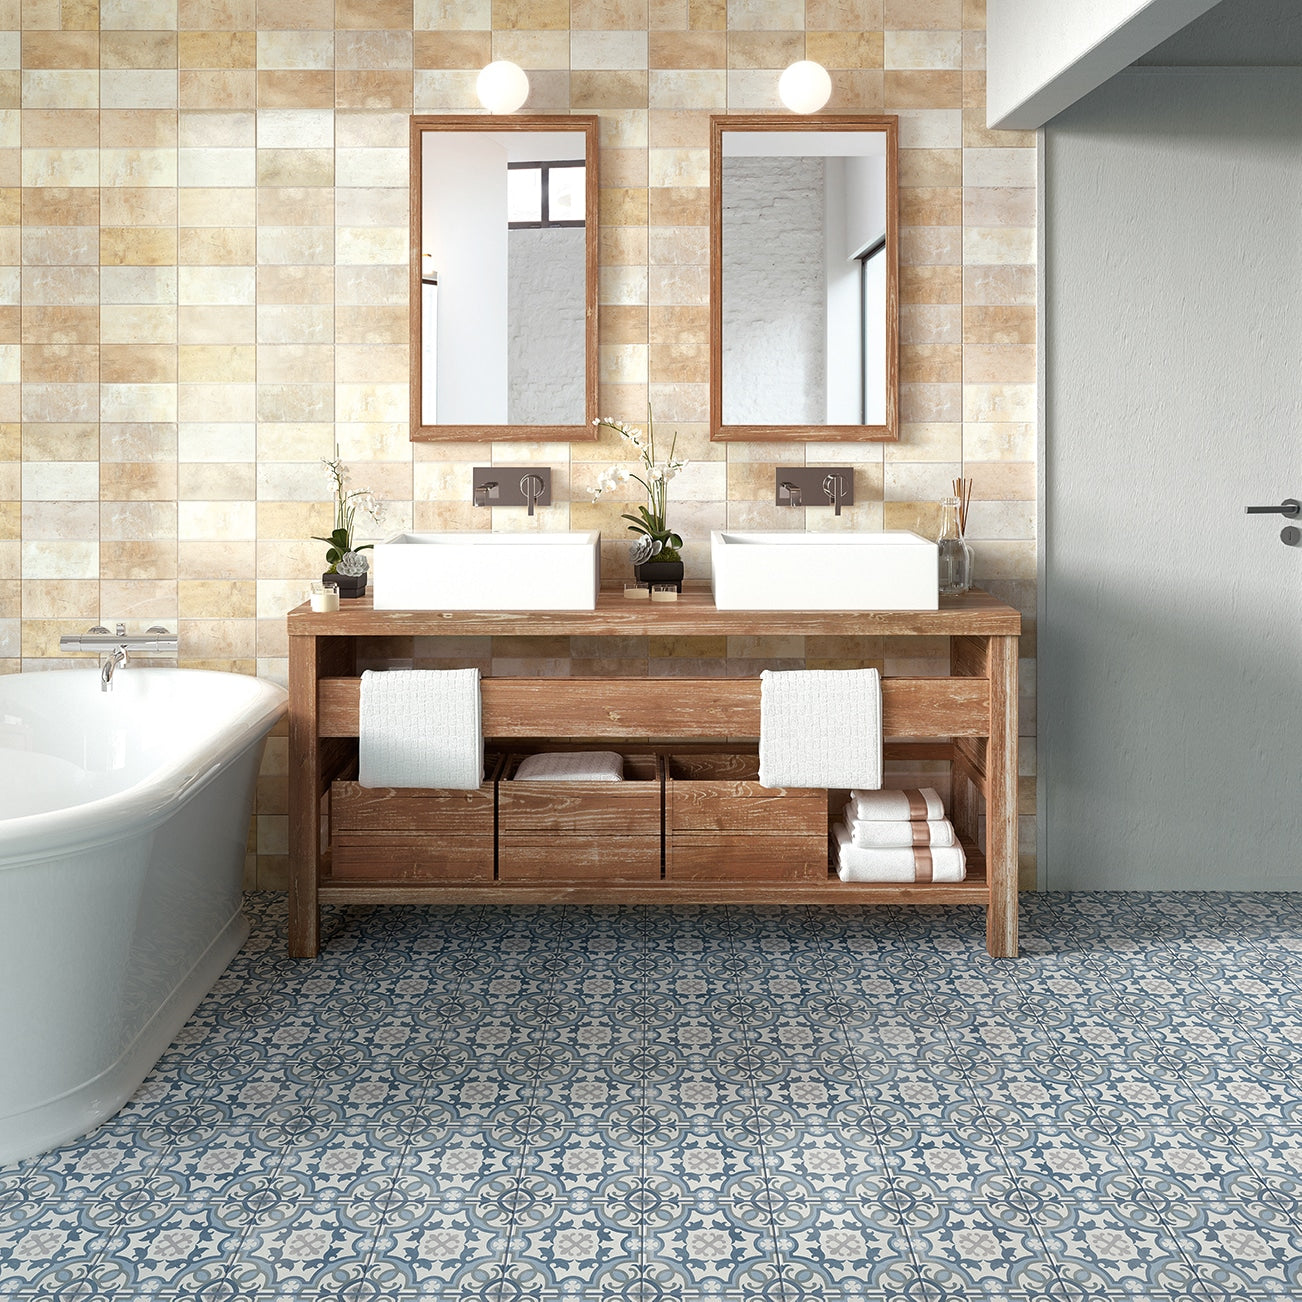 Mirror Bondi 23 1/3 x 23 1/3 Patterned Tile Bathroom Flooring